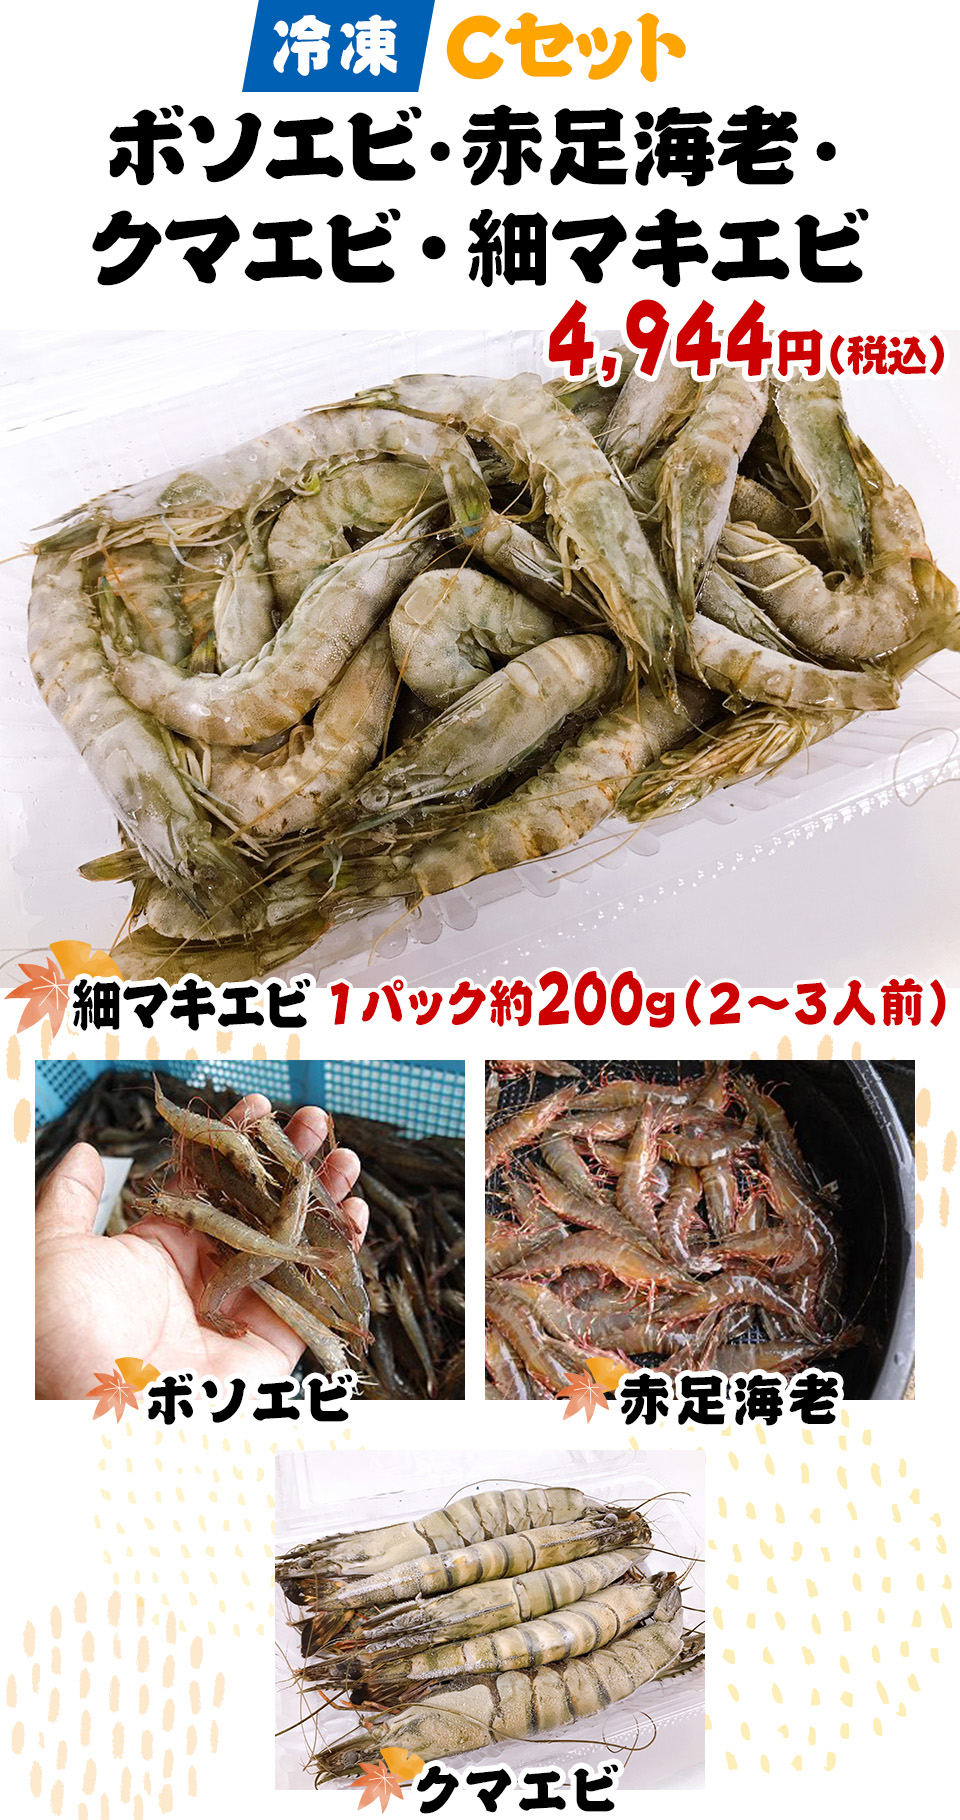 冷凍Cセット ボソエビ・赤足海老・クマエビ・細マキエビ 4,944円(税込)